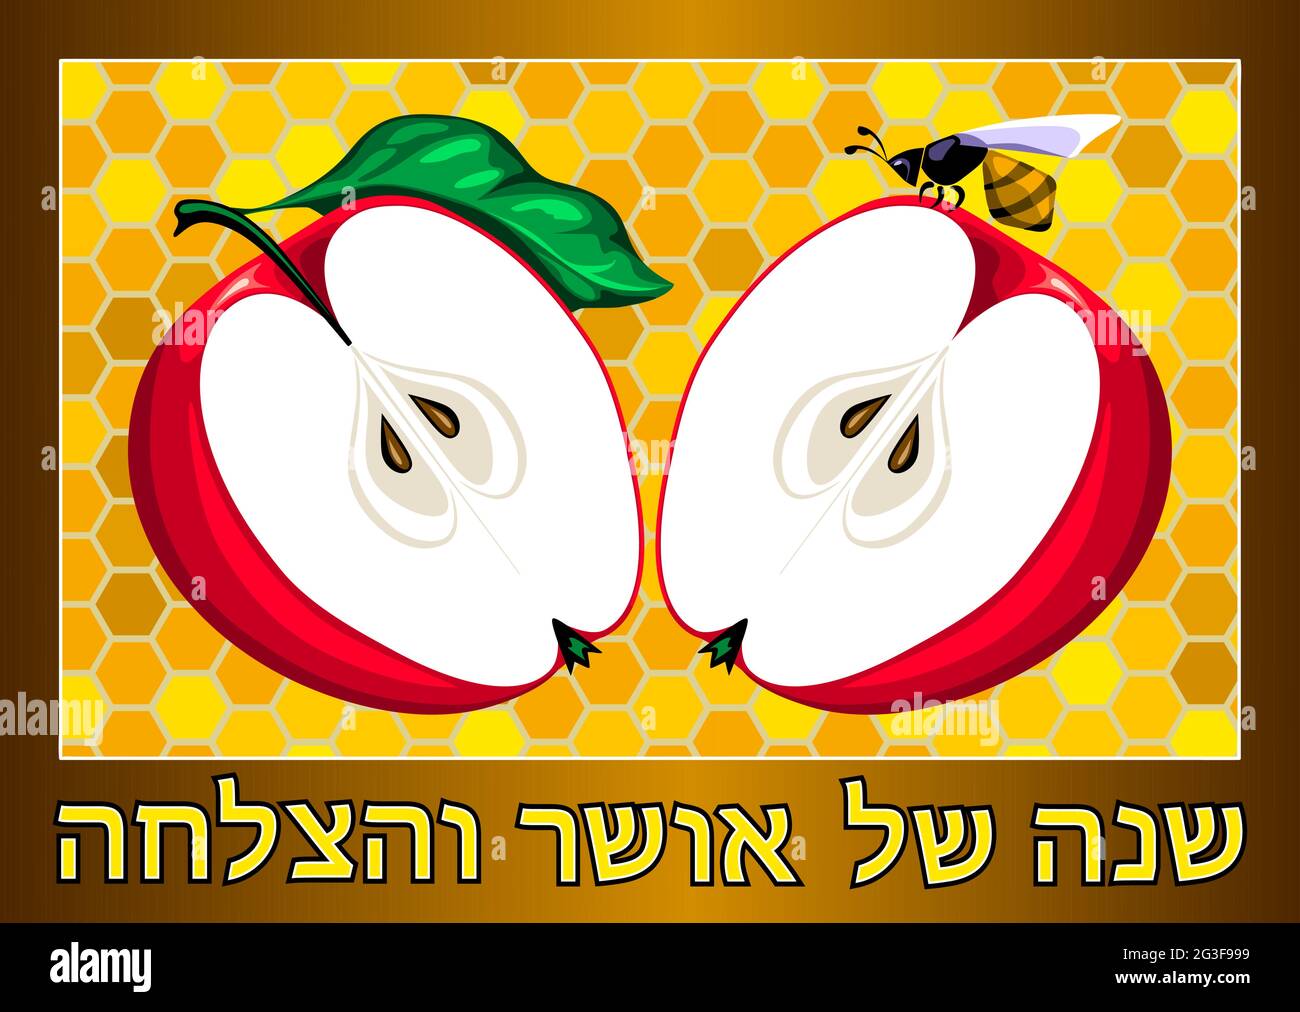 Felice biglietto d'auguri ebraico di Capodanno (Rosh Hashanah). Due metà di una mela su uno sfondo di favi. Illustrazione Vettoriale